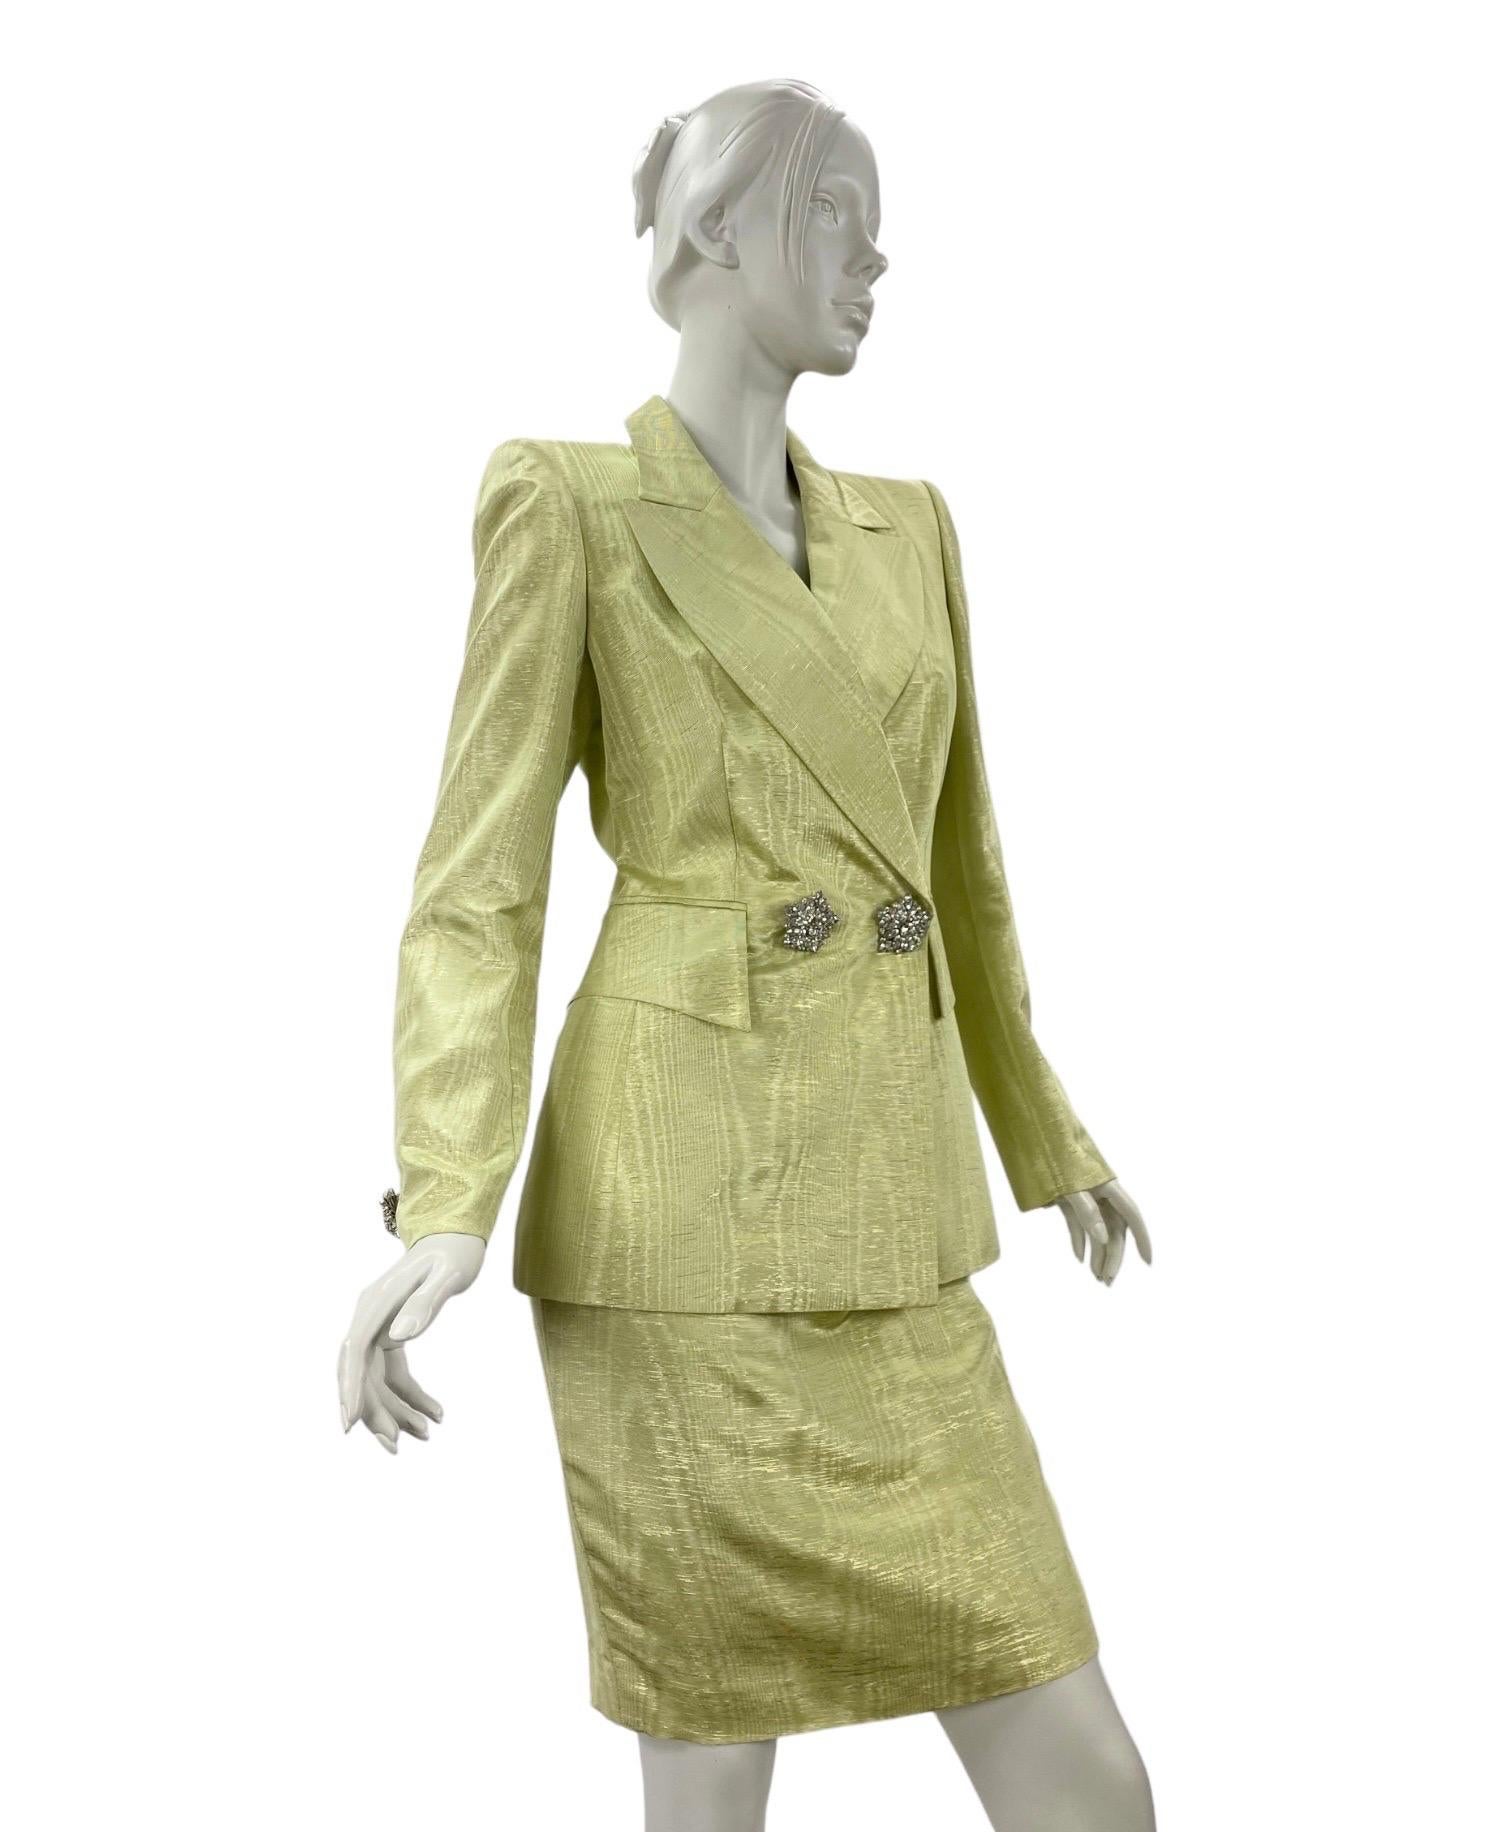 90-s Vintage Escada Couture Crystal verschönert Moire Rock Anzug 
Farbe: Grüner Apfel mit goldener Oberfläche
Kristallknöpfe, Vollständig gefüttert
Größe 34
Neu, mit Etiketten
Ausgezeichneter Zustand